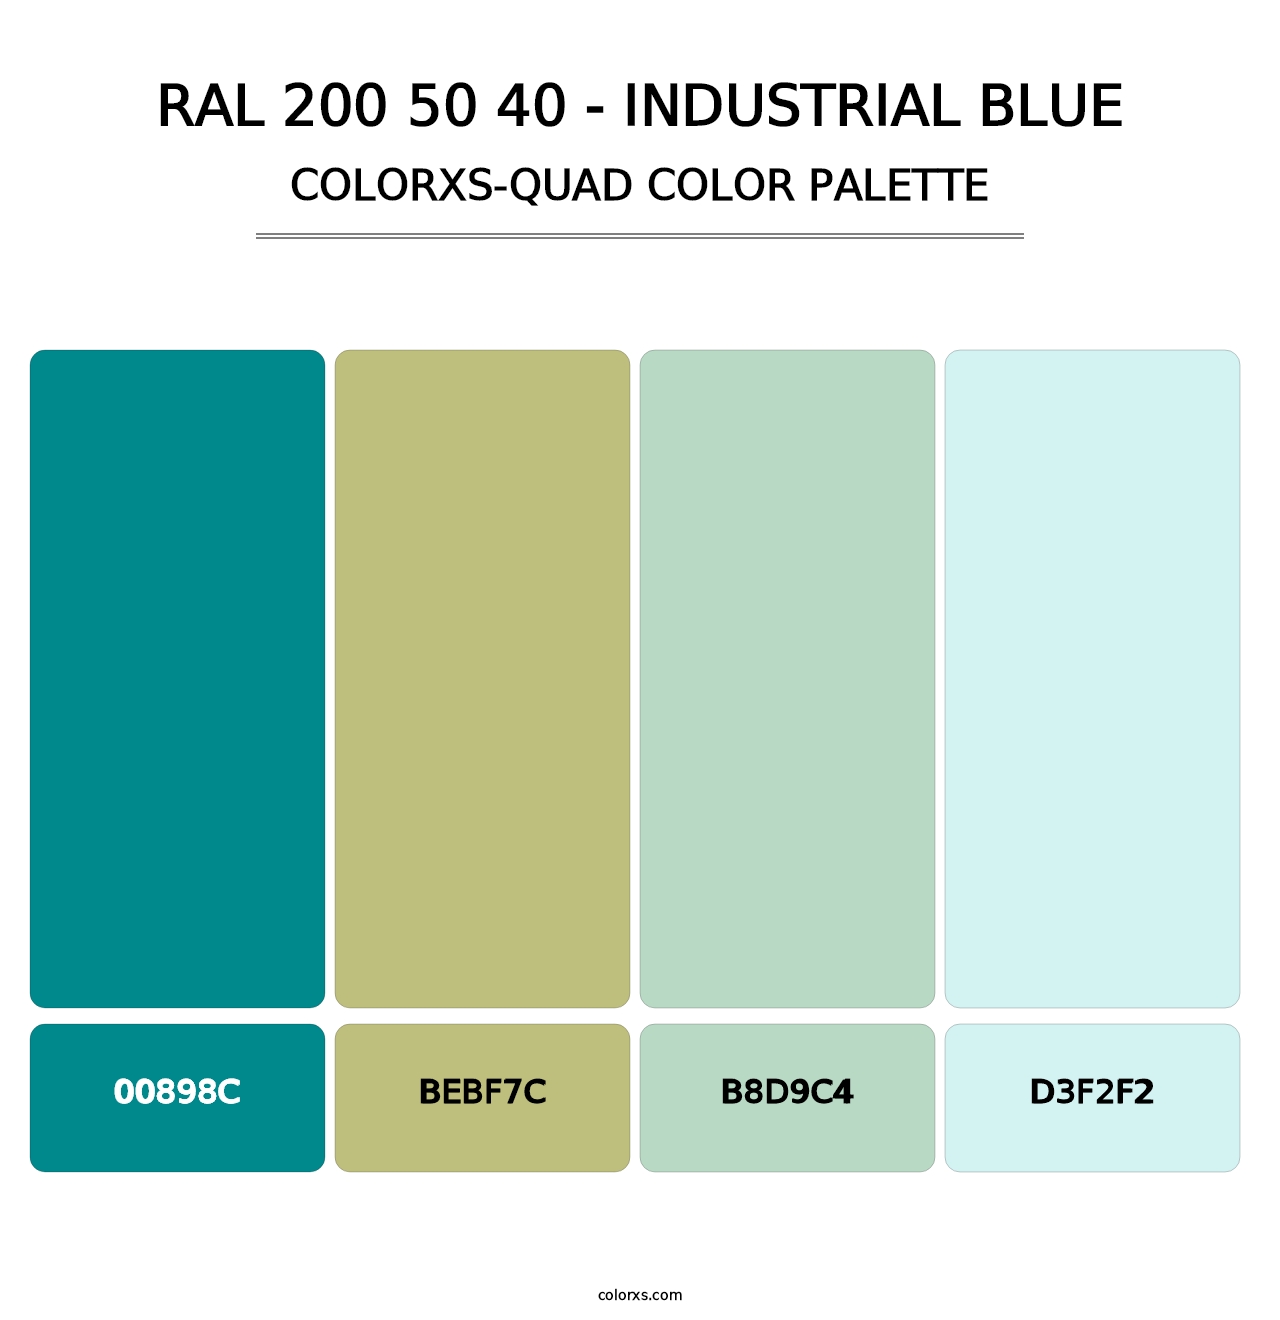 RAL 200 50 40 - Industrial Blue - Colorxs Quad Palette